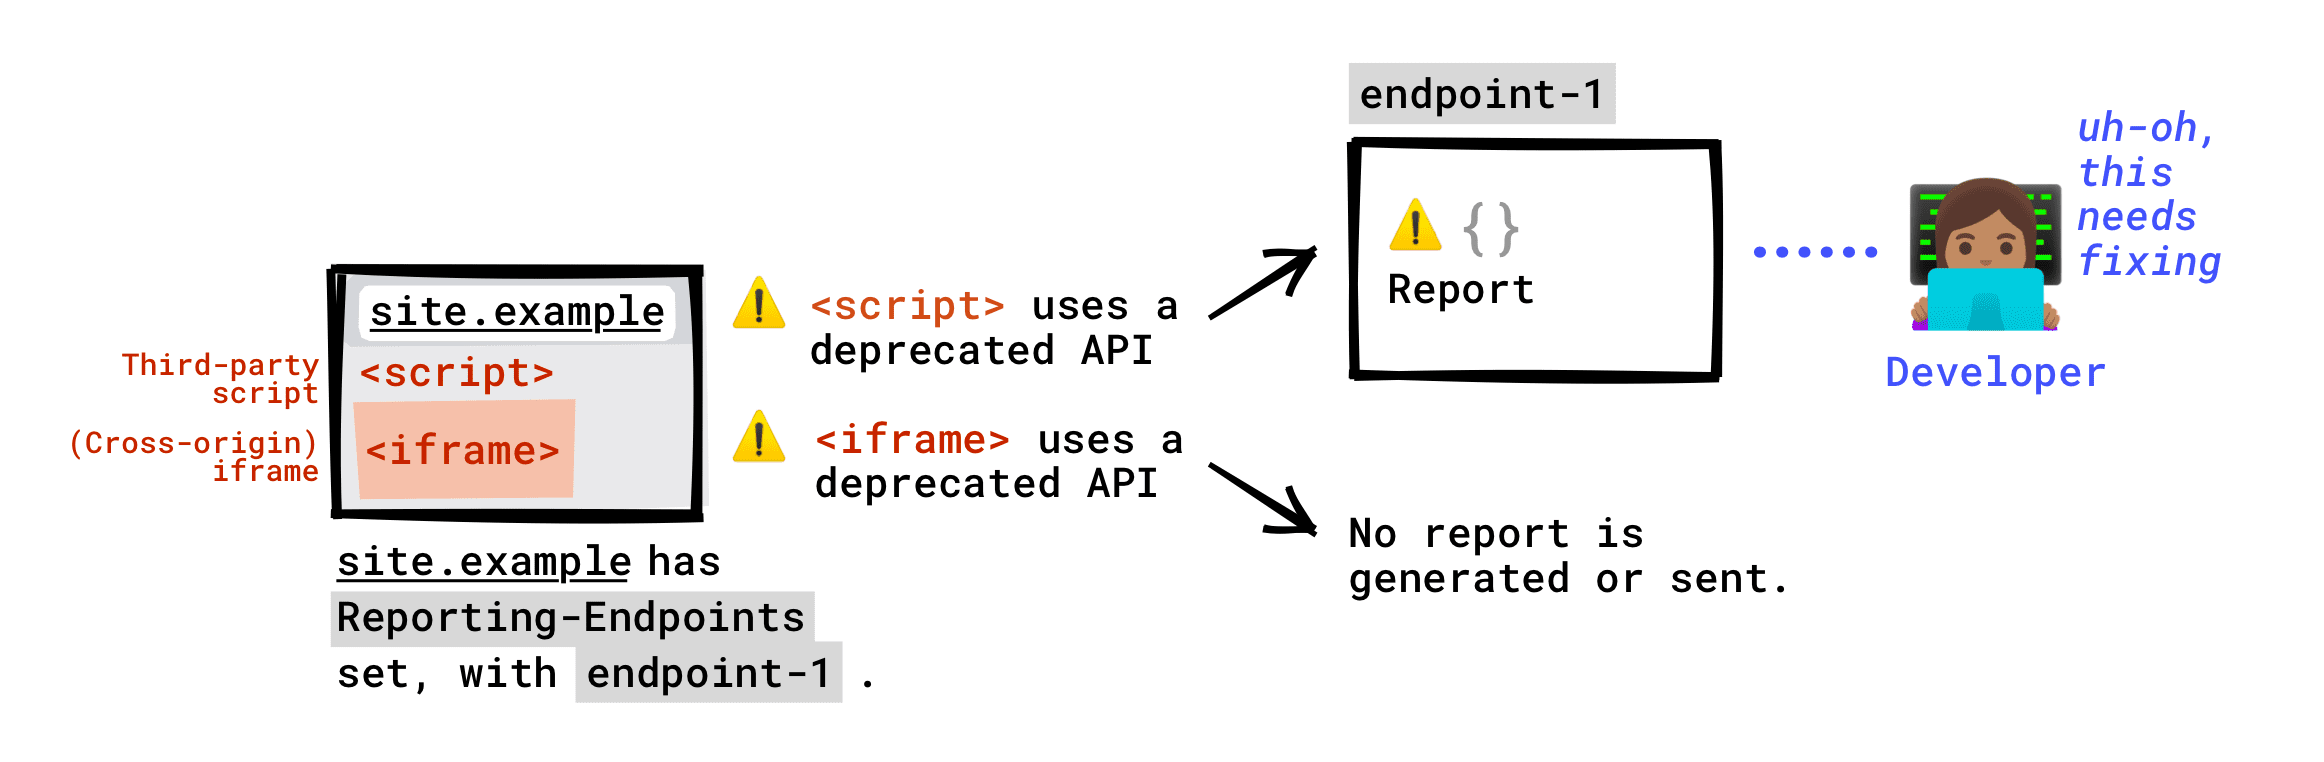 如果您的網頁設定了 Reporting-Endpoint 標頭，則網頁上執行的第三方指令碼呼叫的已淘汰 API 將回報至您的端點。網頁中內嵌 iframe 呼叫的已淘汰 API，將不會回報至端點。只有在 iframe 伺服器設定「報告端點」的情況下，系統才會產生淘汰報表，且系統會將這份報表傳送到該 iframe 伺服器設定的端點。